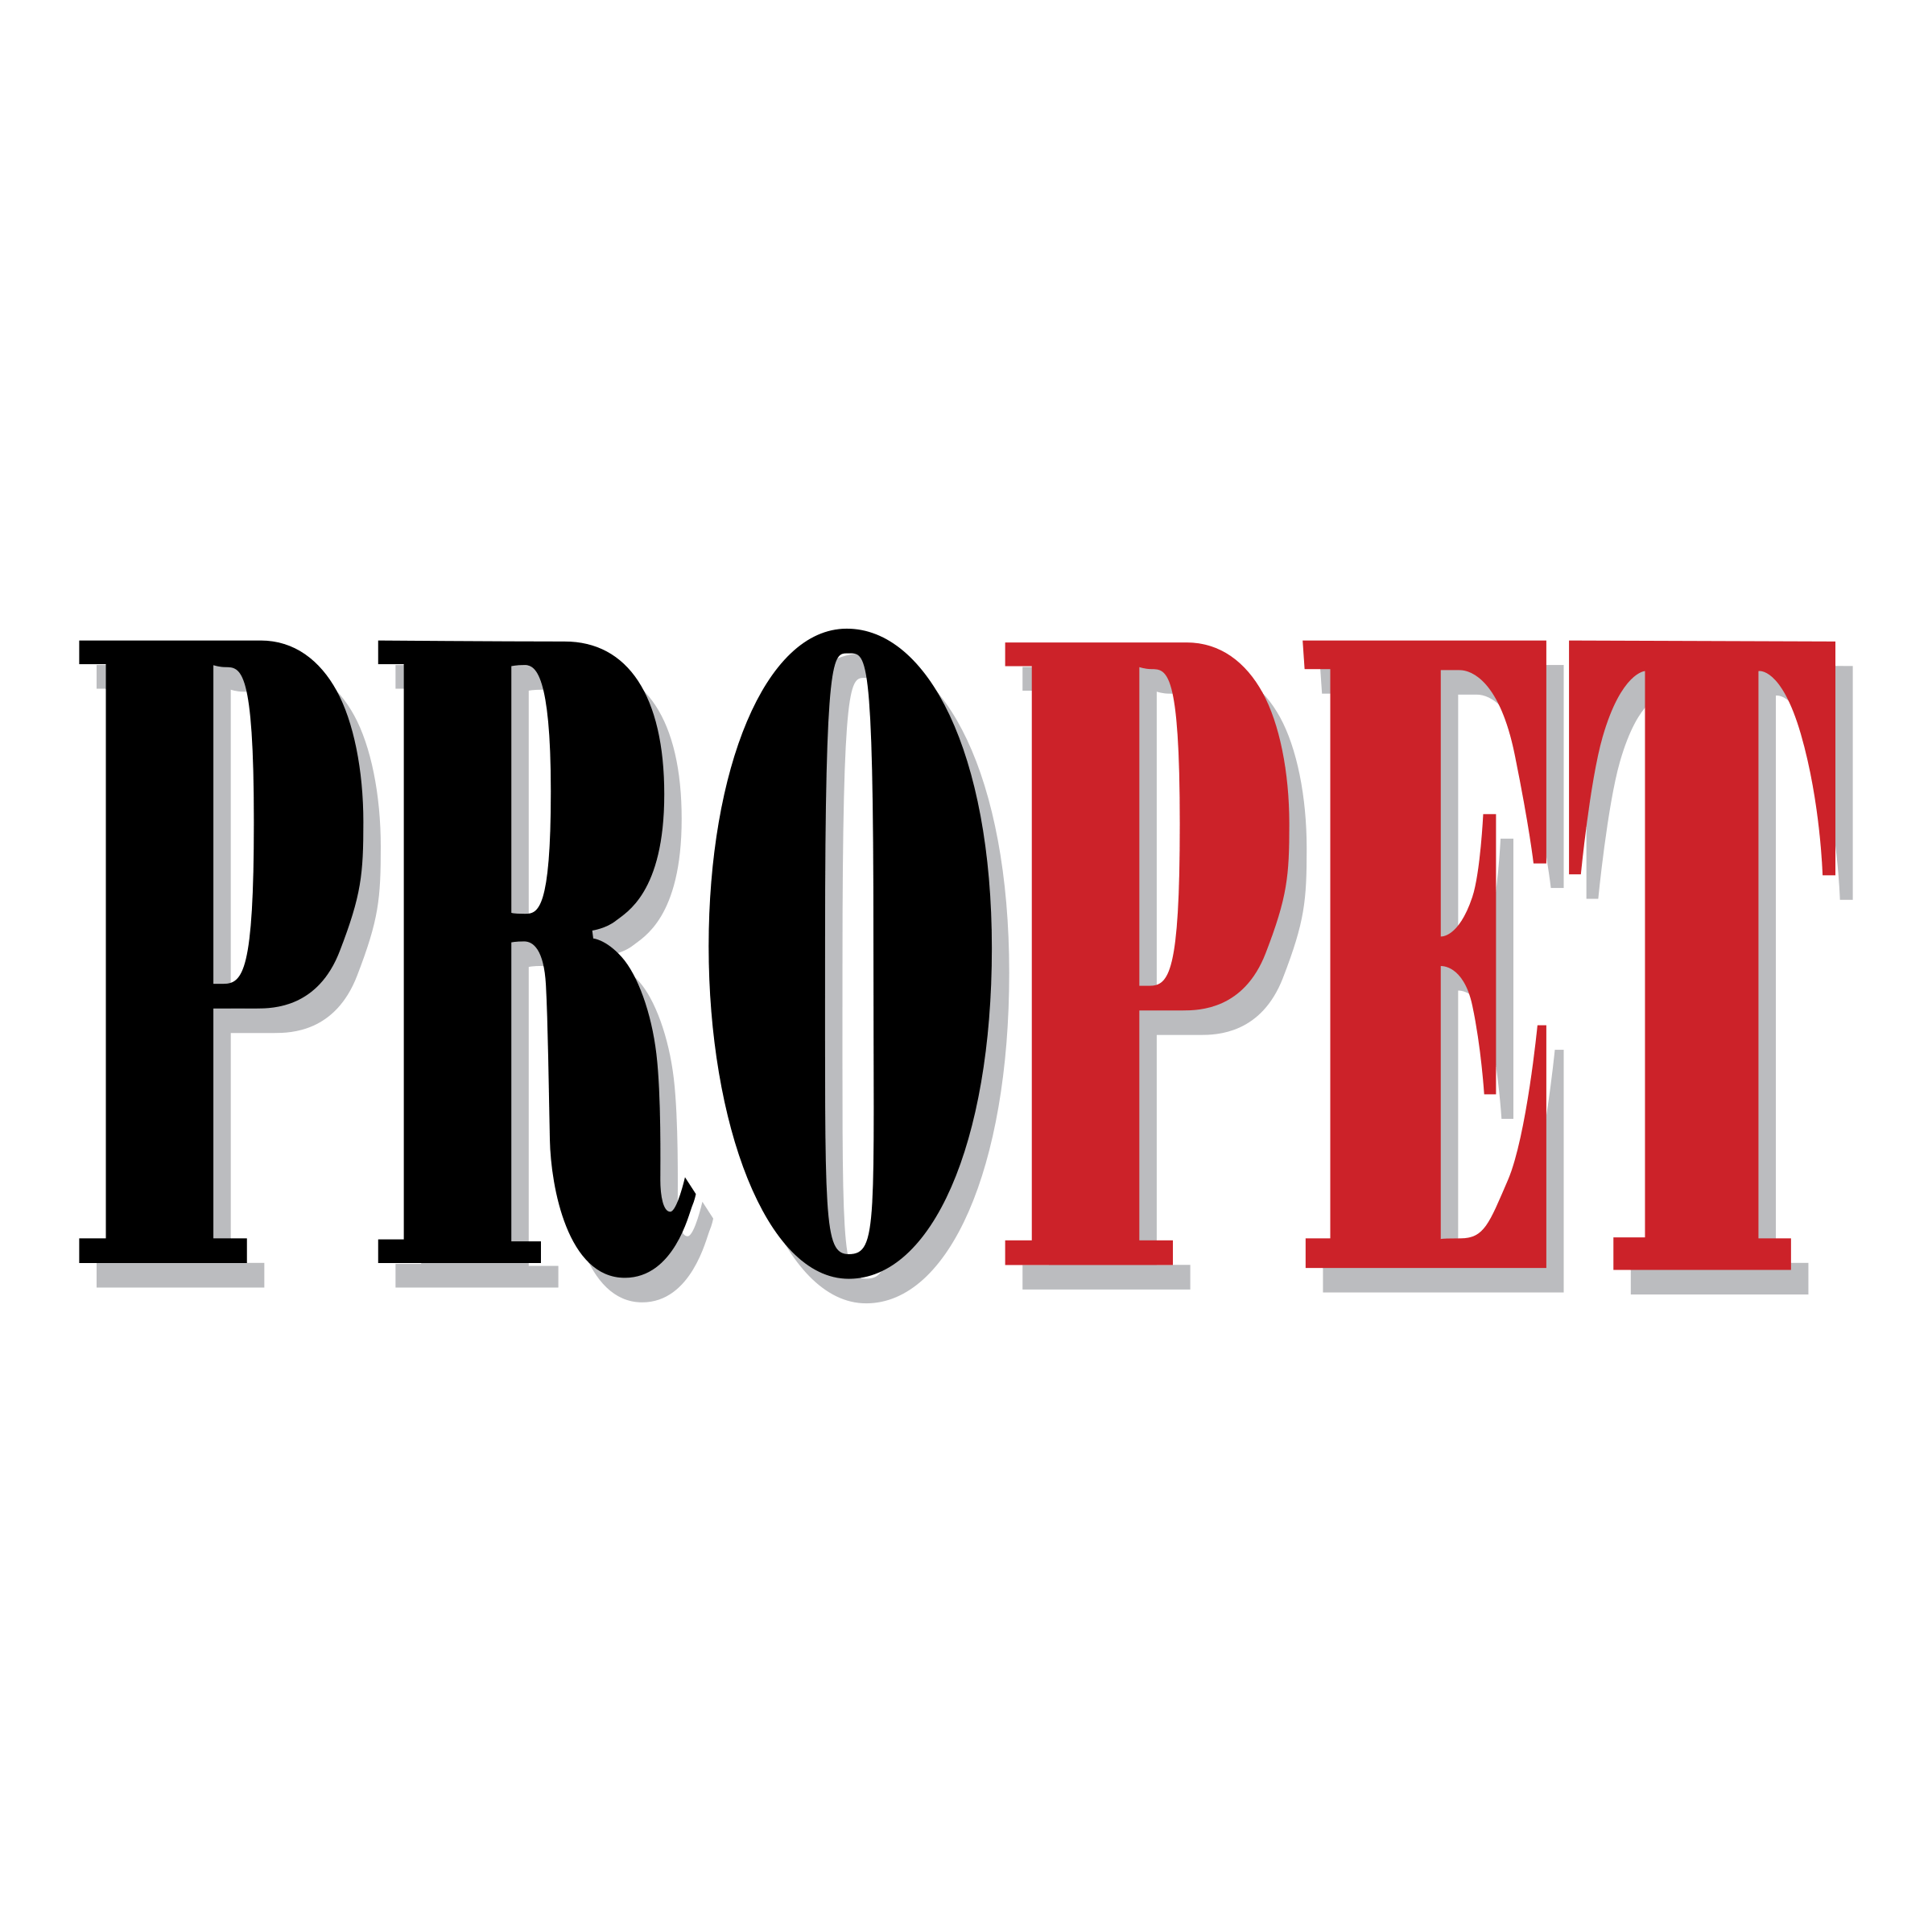 Propet Logo - ProPet Logo PNG Transparent & SVG Vector - Freebie Supply